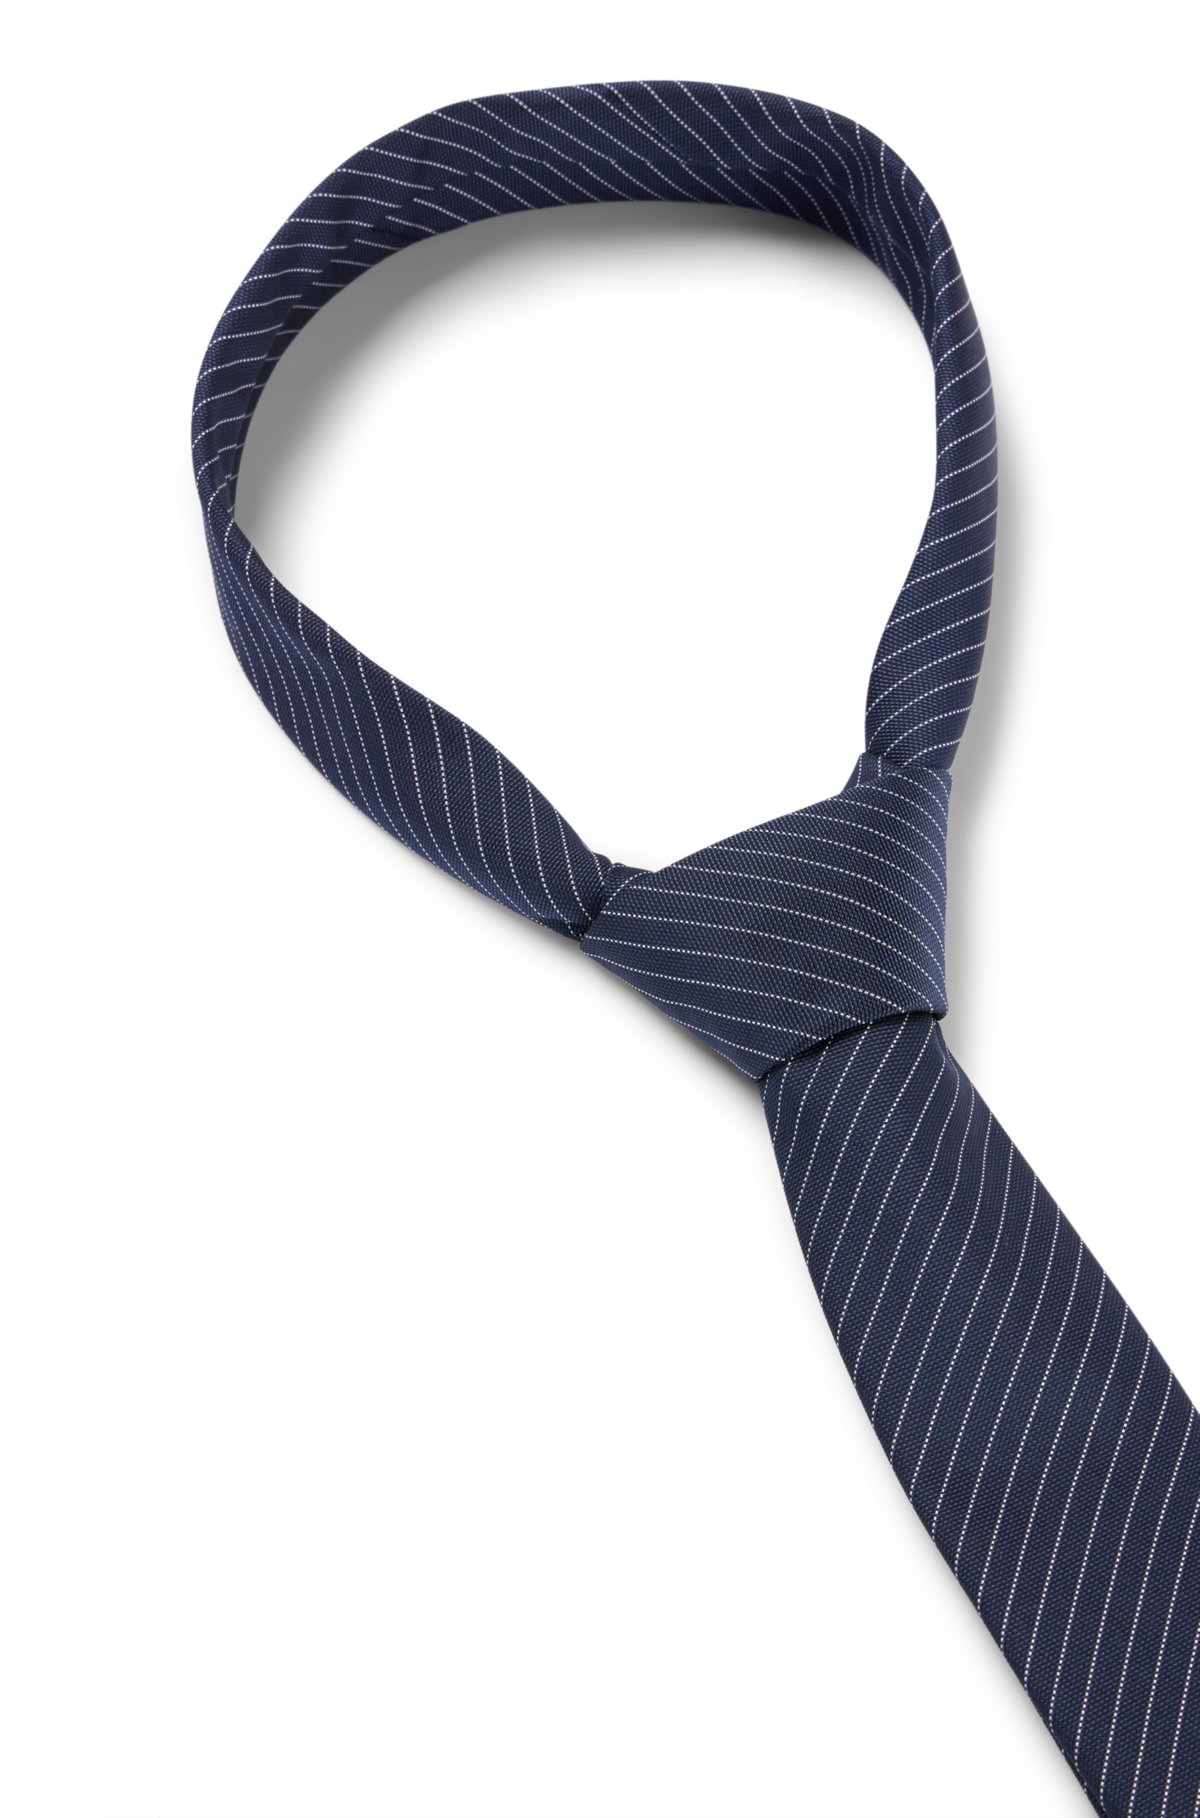 idea Pepino Difuminar HUGO - Corbata a rayas diagonales de fibras recicladas y seda